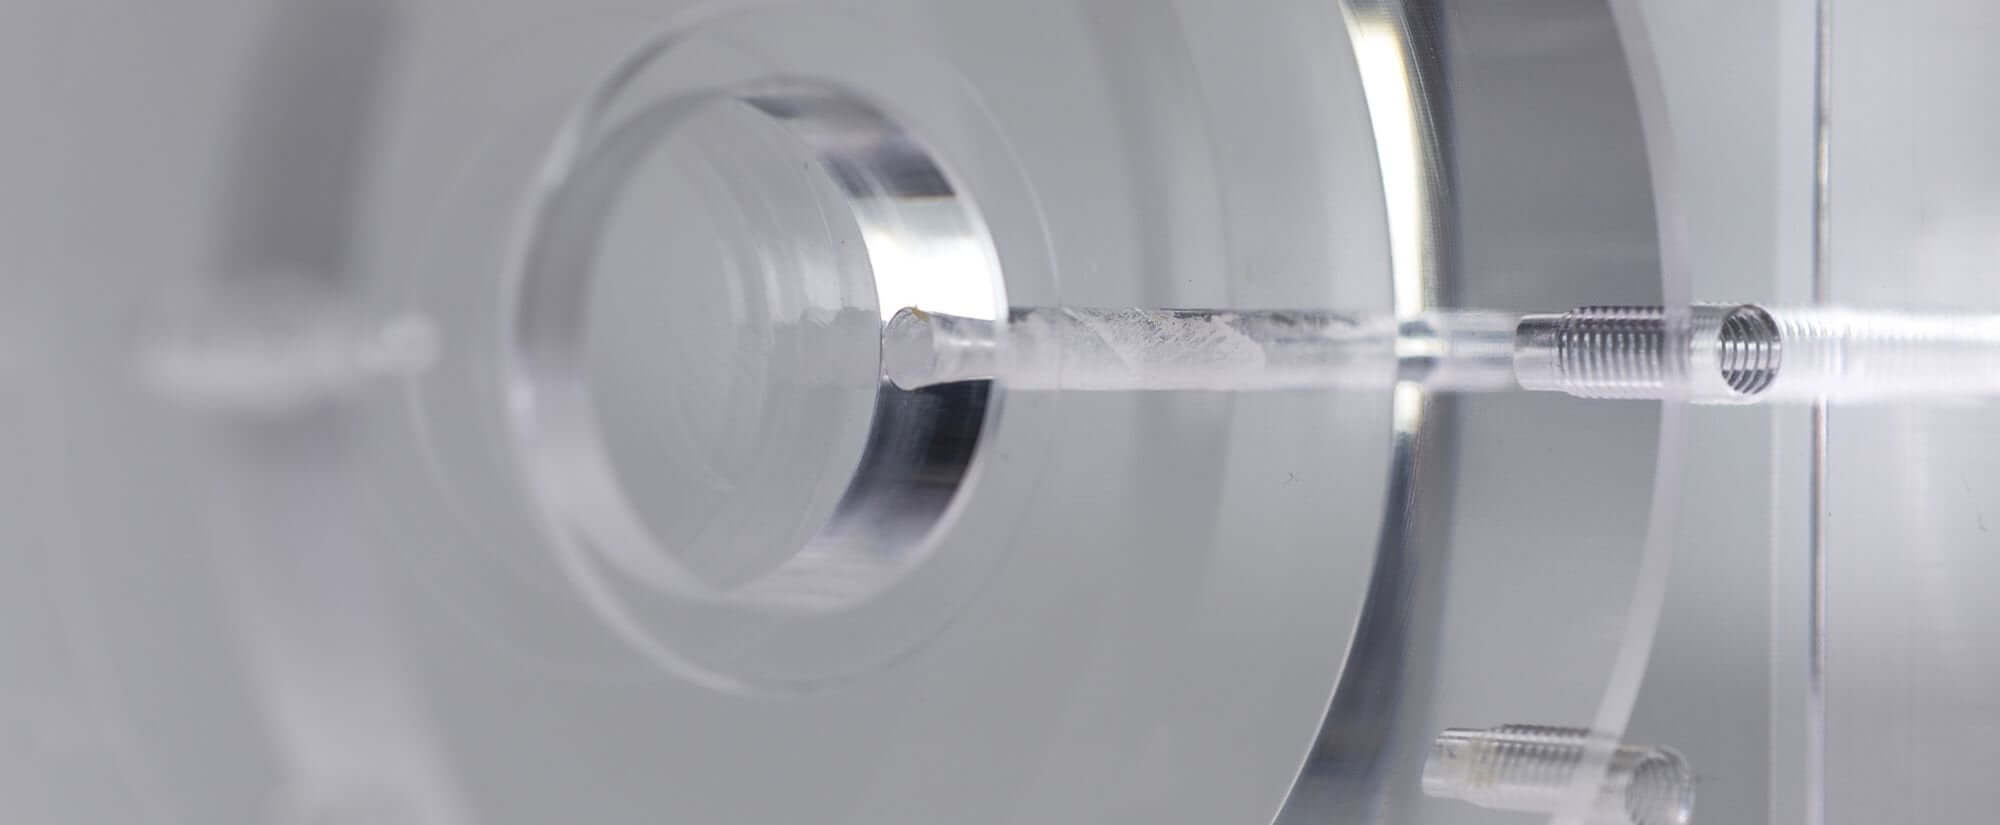 Plaque de base acryline en verre acrylique avec des alésages profonds pièces techniques forées profondément percés accessoires moulus de base partie acrylic production